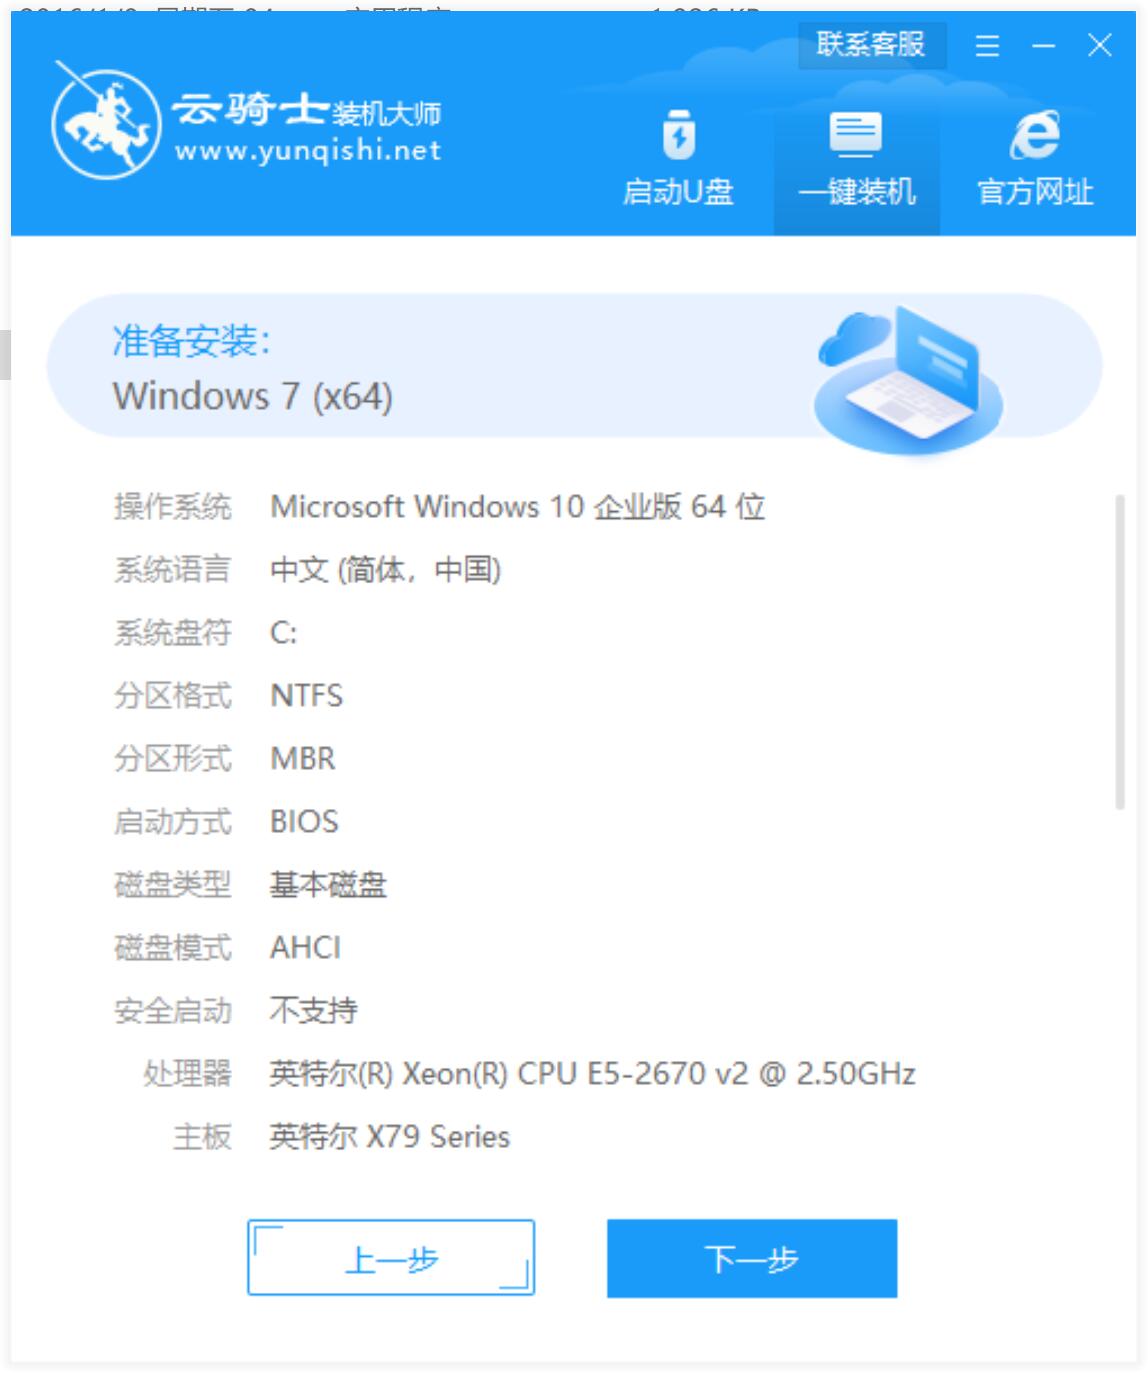 最新苹果笔记本专用系统  Window7 X64  纯净中文旗舰版系统下载 V2022.12(6)